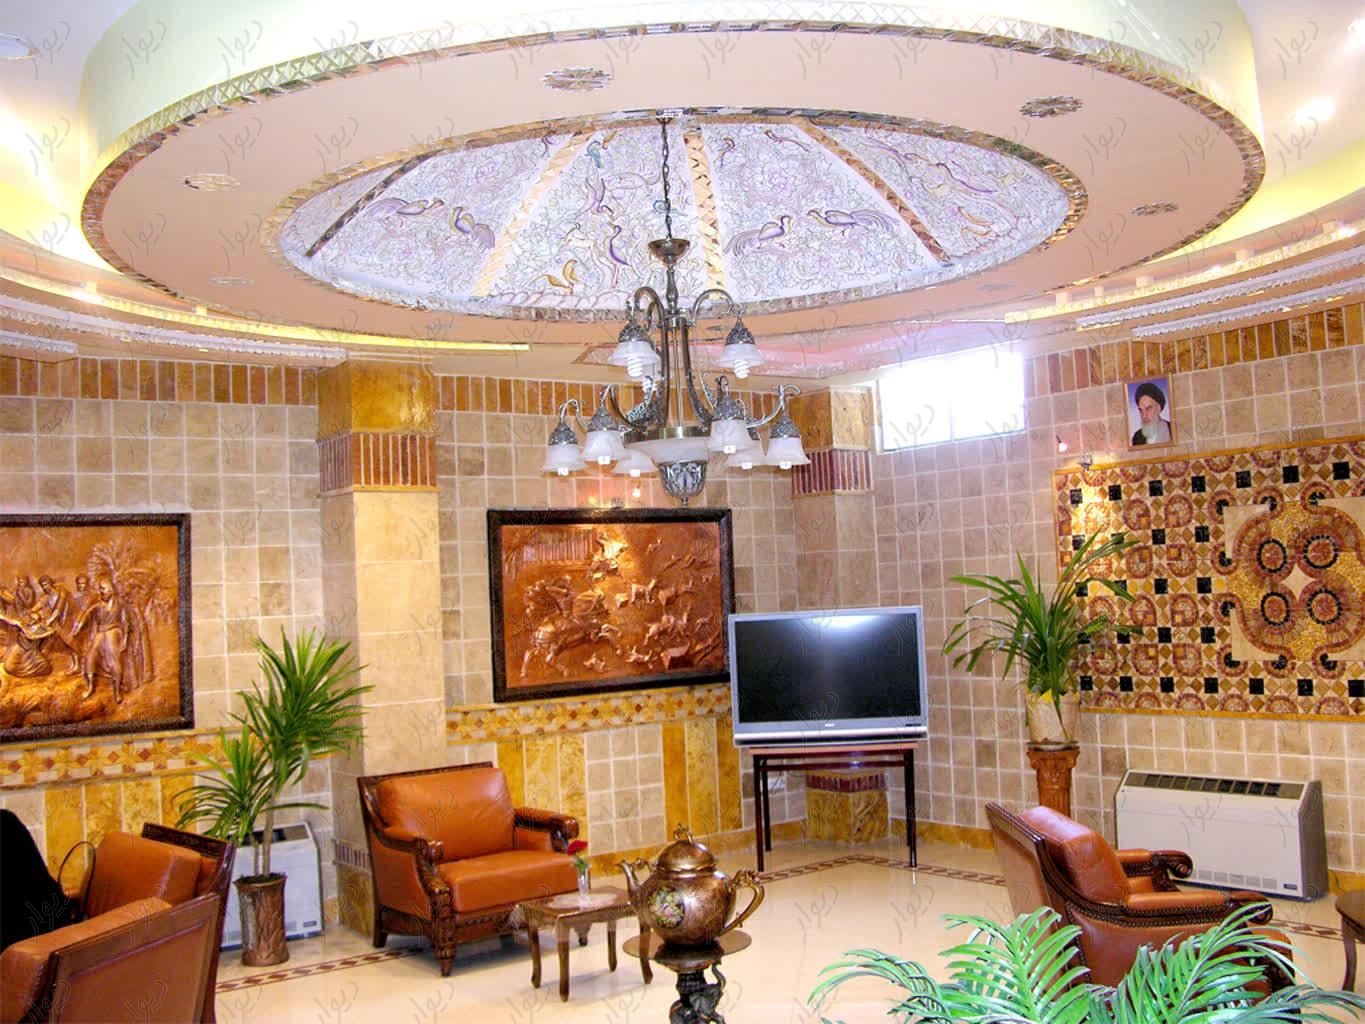 فروش هتل آپارتمان در خیابان چهارباغ اصفهان|فروش دفتر کار، دفتر اداری و مطب|اصفهان, بیدآباد|دیوار